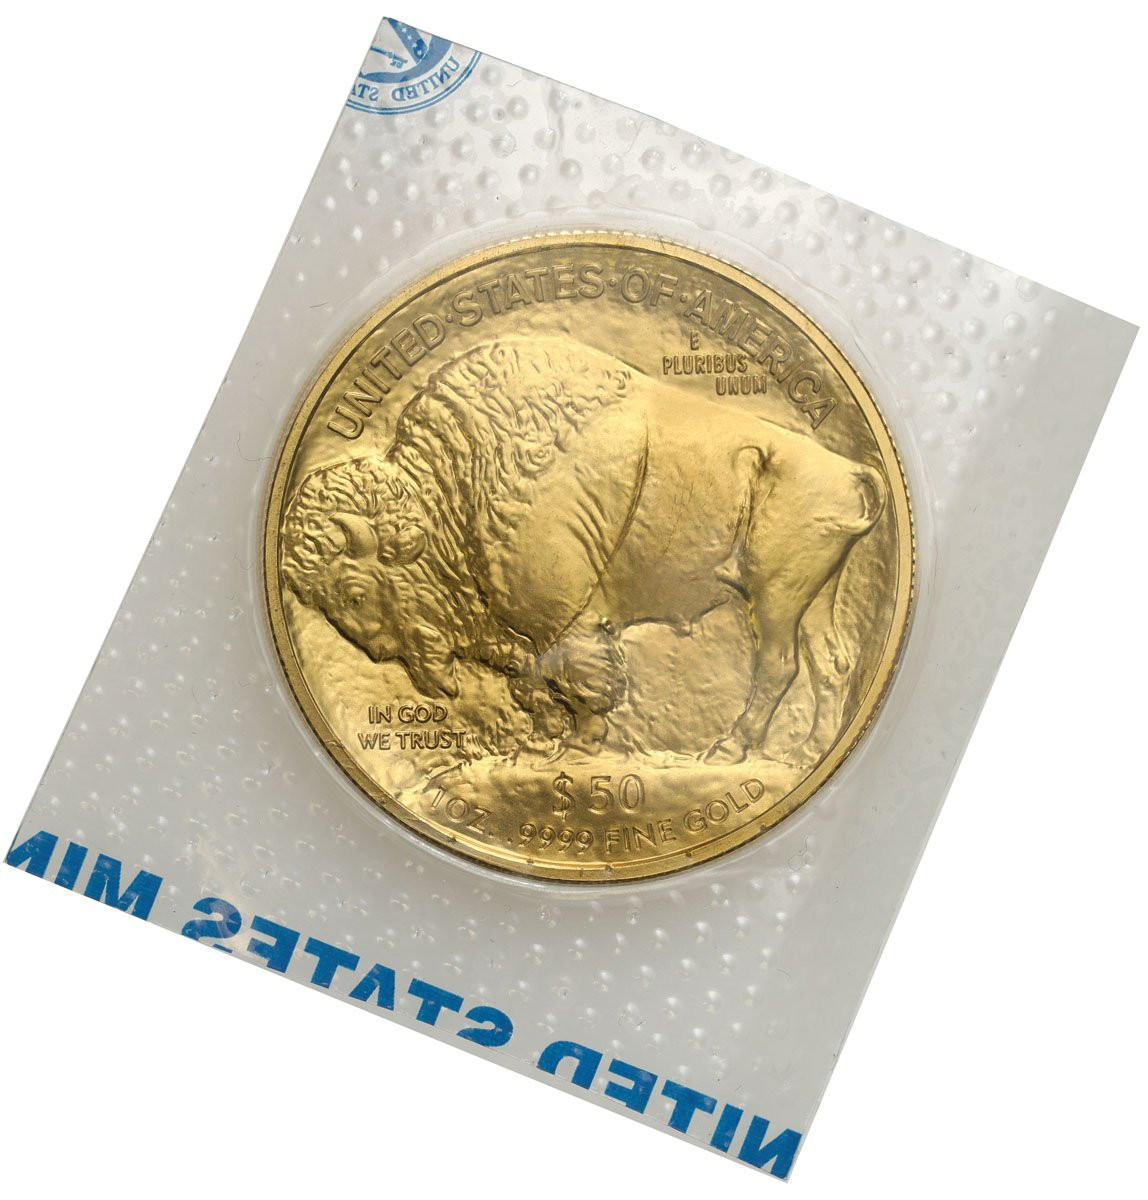 USA. Złote 50 $ dolarów 2017 Bizon (Buffalo) - 1 uncja złoto